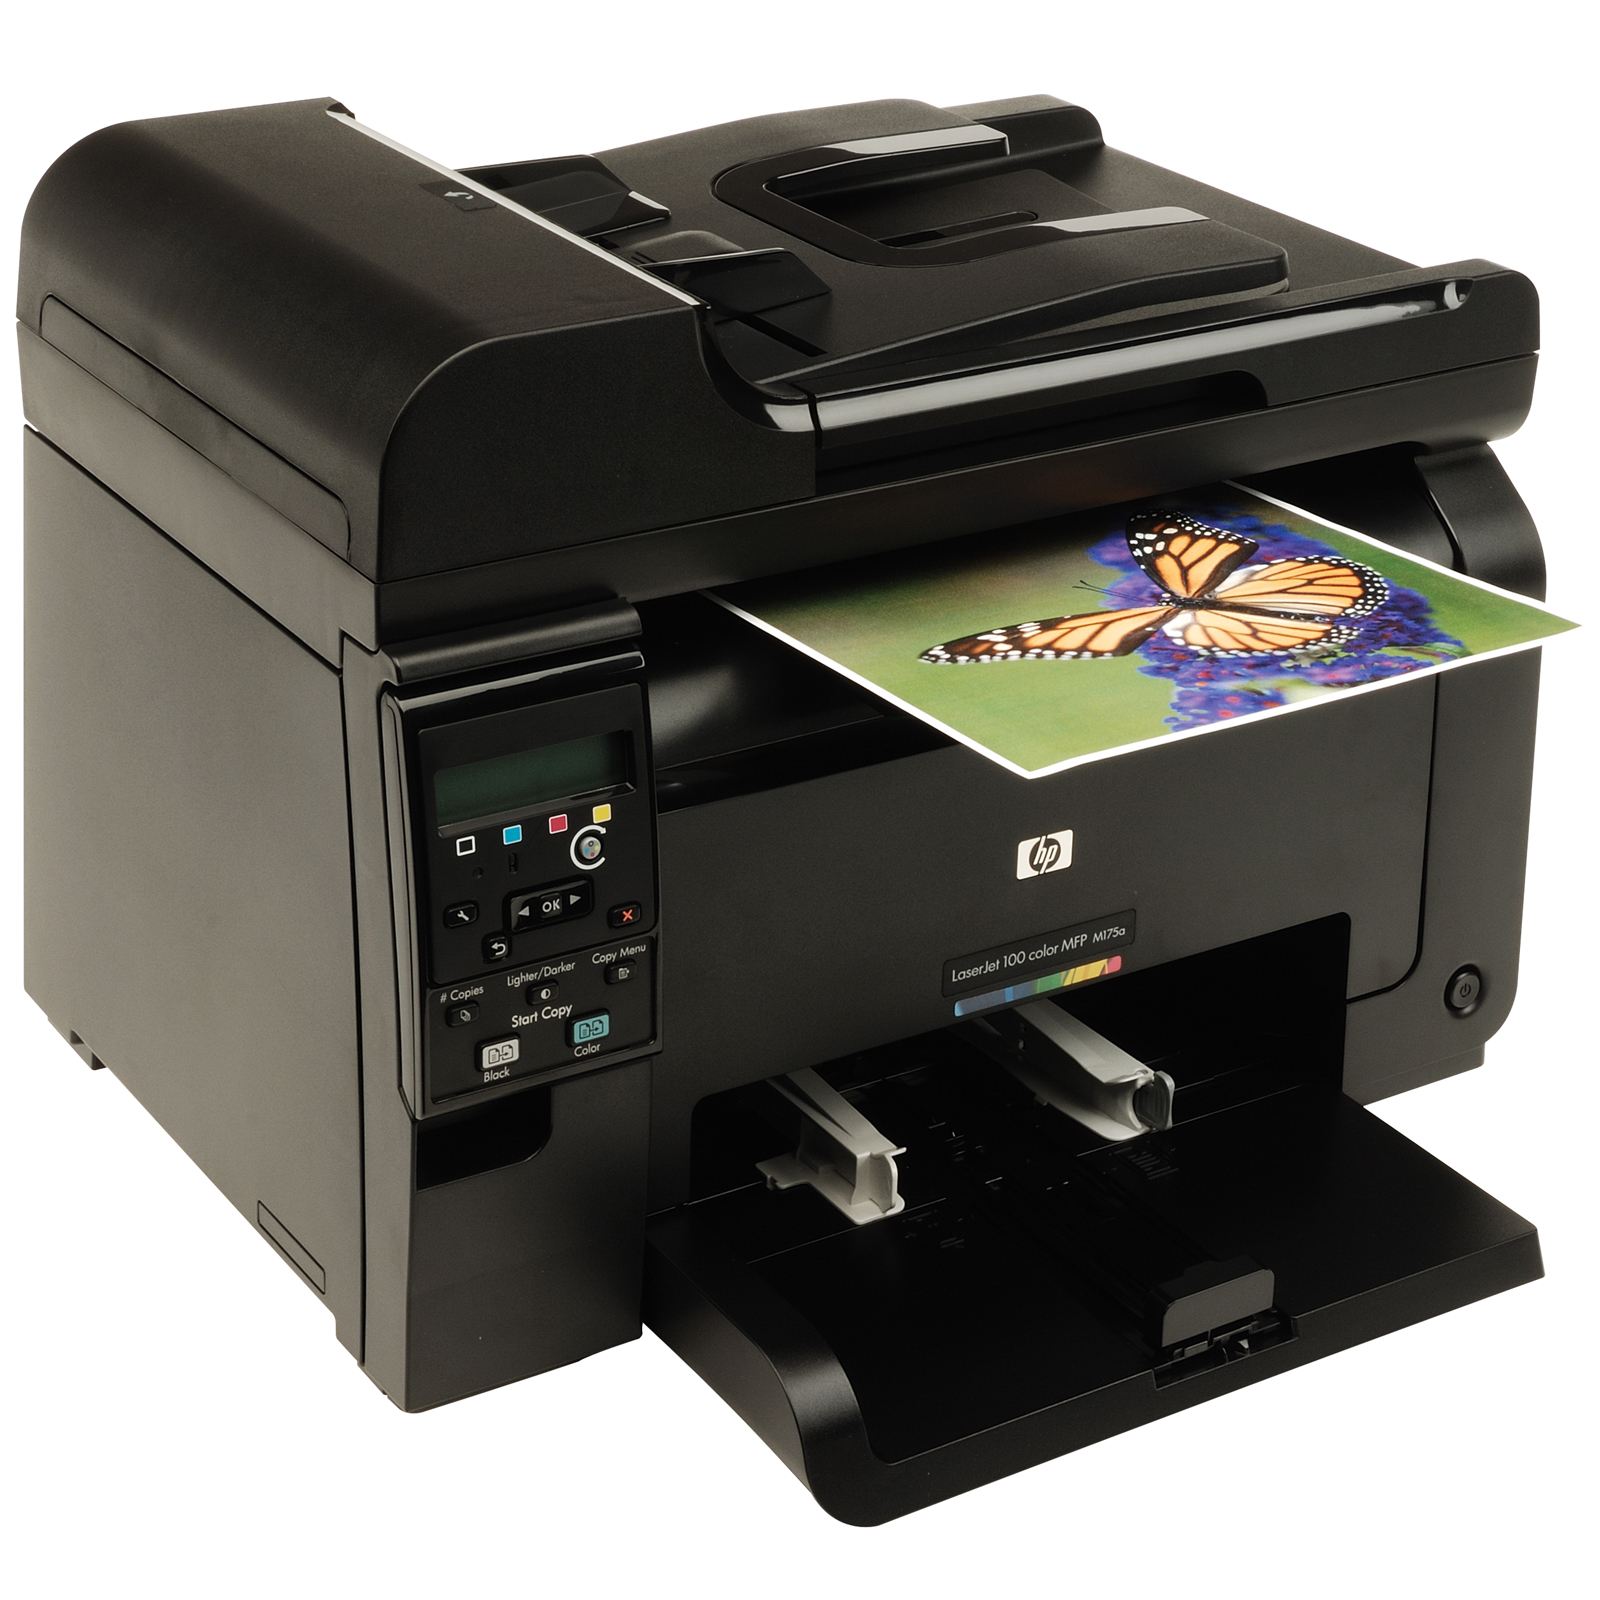 Лазерный принтер 3в1. LASERJET Pro 100 Color MFP m175.